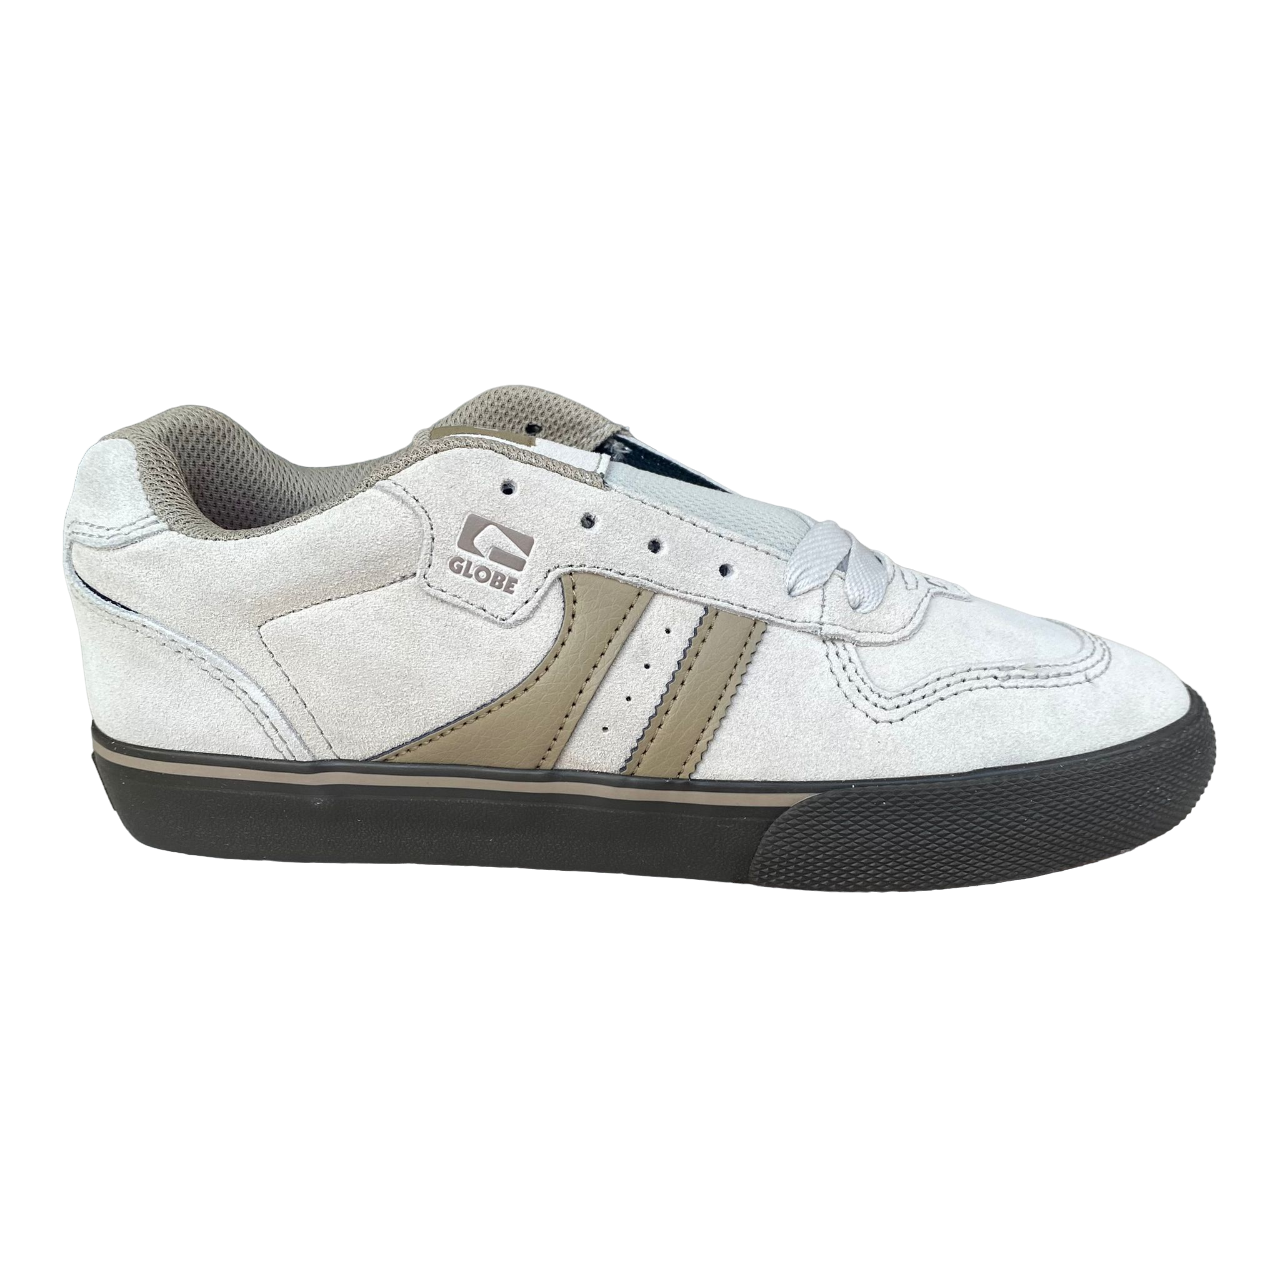 Globe scarpa sneakers da skateboard Encore-2 GBENCO2 16367 deserto-tortora